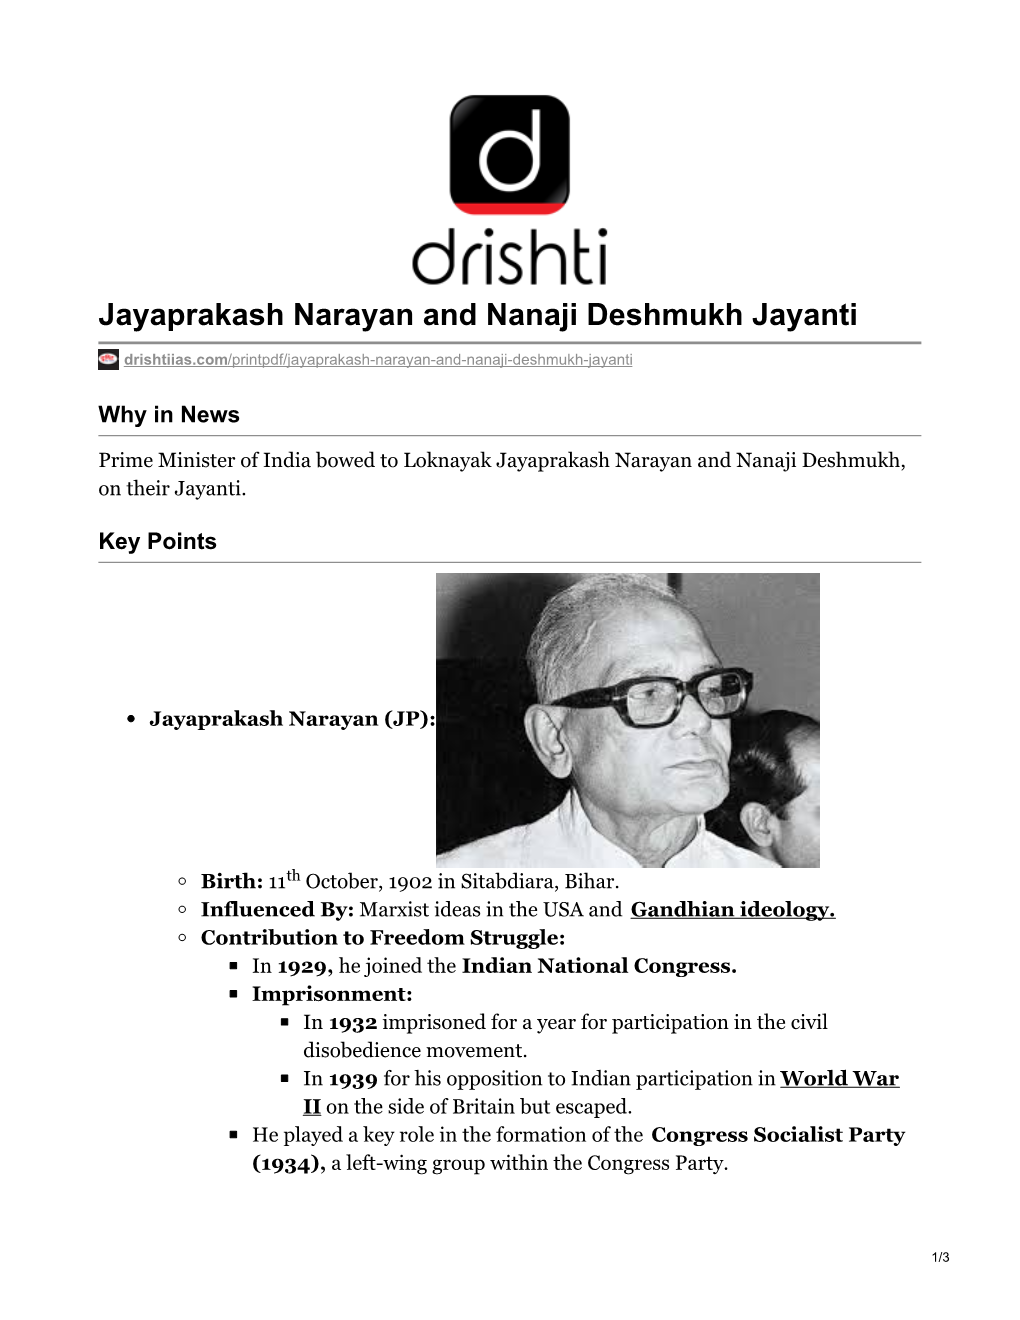 Jayaprakash Narayan and Nanaji Deshmukh Jayanti